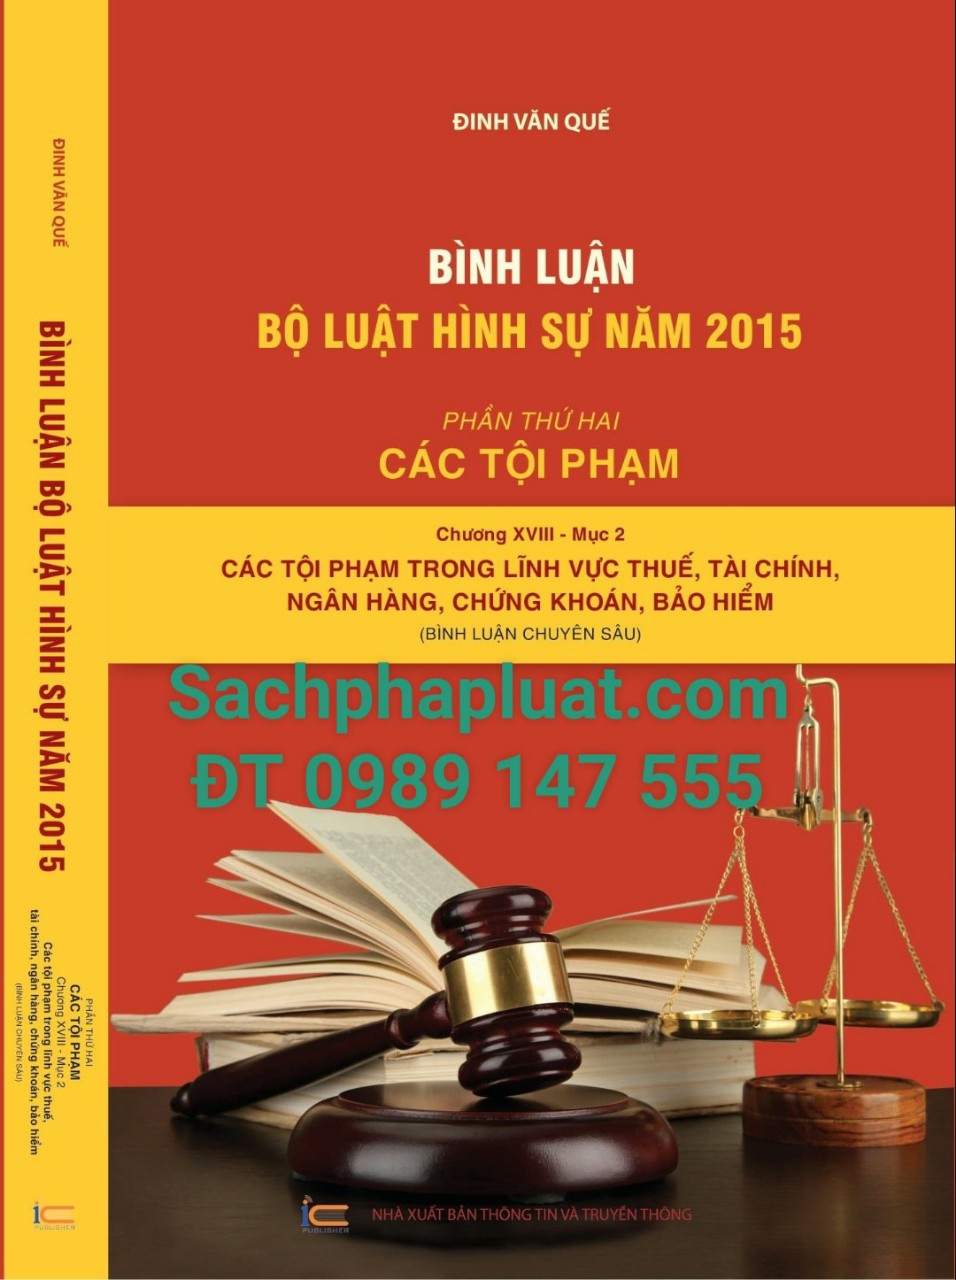 Bình luận Bộ luật Hình sự năm 2015 (Phần thứ hai - Các tội phạm), Chương XVIII, Mục 2: Các tội phạm trong lĩnh vực thuế, tài chính, ngân hàng, chứng khoán, bảo hiểm